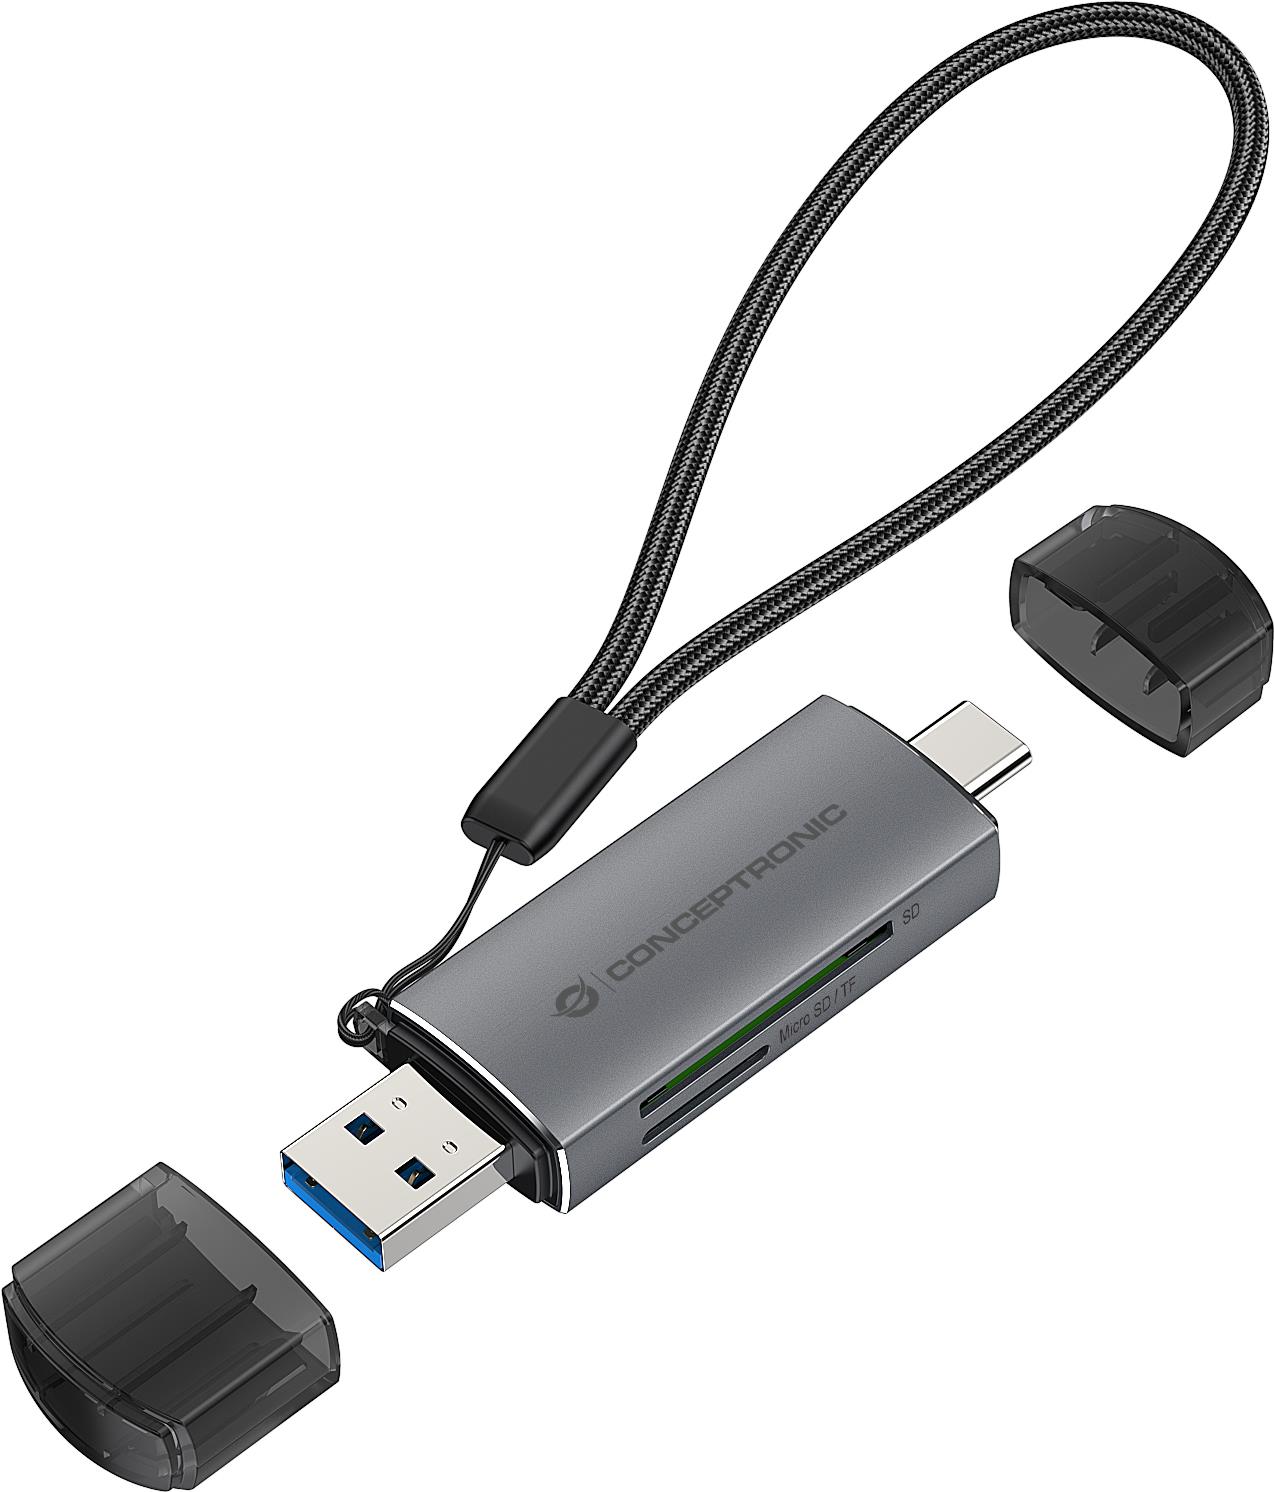 Conceptronic BIAN05G 2-in-1 Dual Plug Kartenleser USB 3.0, SD/MicroSD 3.0, UHS-I. Kompatible Speicherkarten: MicroSD (TransFlash), SD, SDHC, SDXC, Produktfarbe: Grau, Datenübertragungsrate: 5000 Mbit/s. Schnittstelle: USB 3.2 Gen 1 (3.1 Gen 1) Type-A/Type-C. Nachhaltigkeitszertifikate: CE, REACH, RoHS. Breite: 21,3 mm, Tiefe: 11,5 mm, Höhe: 78 mm. Menge pro Packung: 1 Stück(e), Verpackungsbreite: 75 mm, Verpackungstiefe: 25 mm (BIAN05G) von Conceptronic